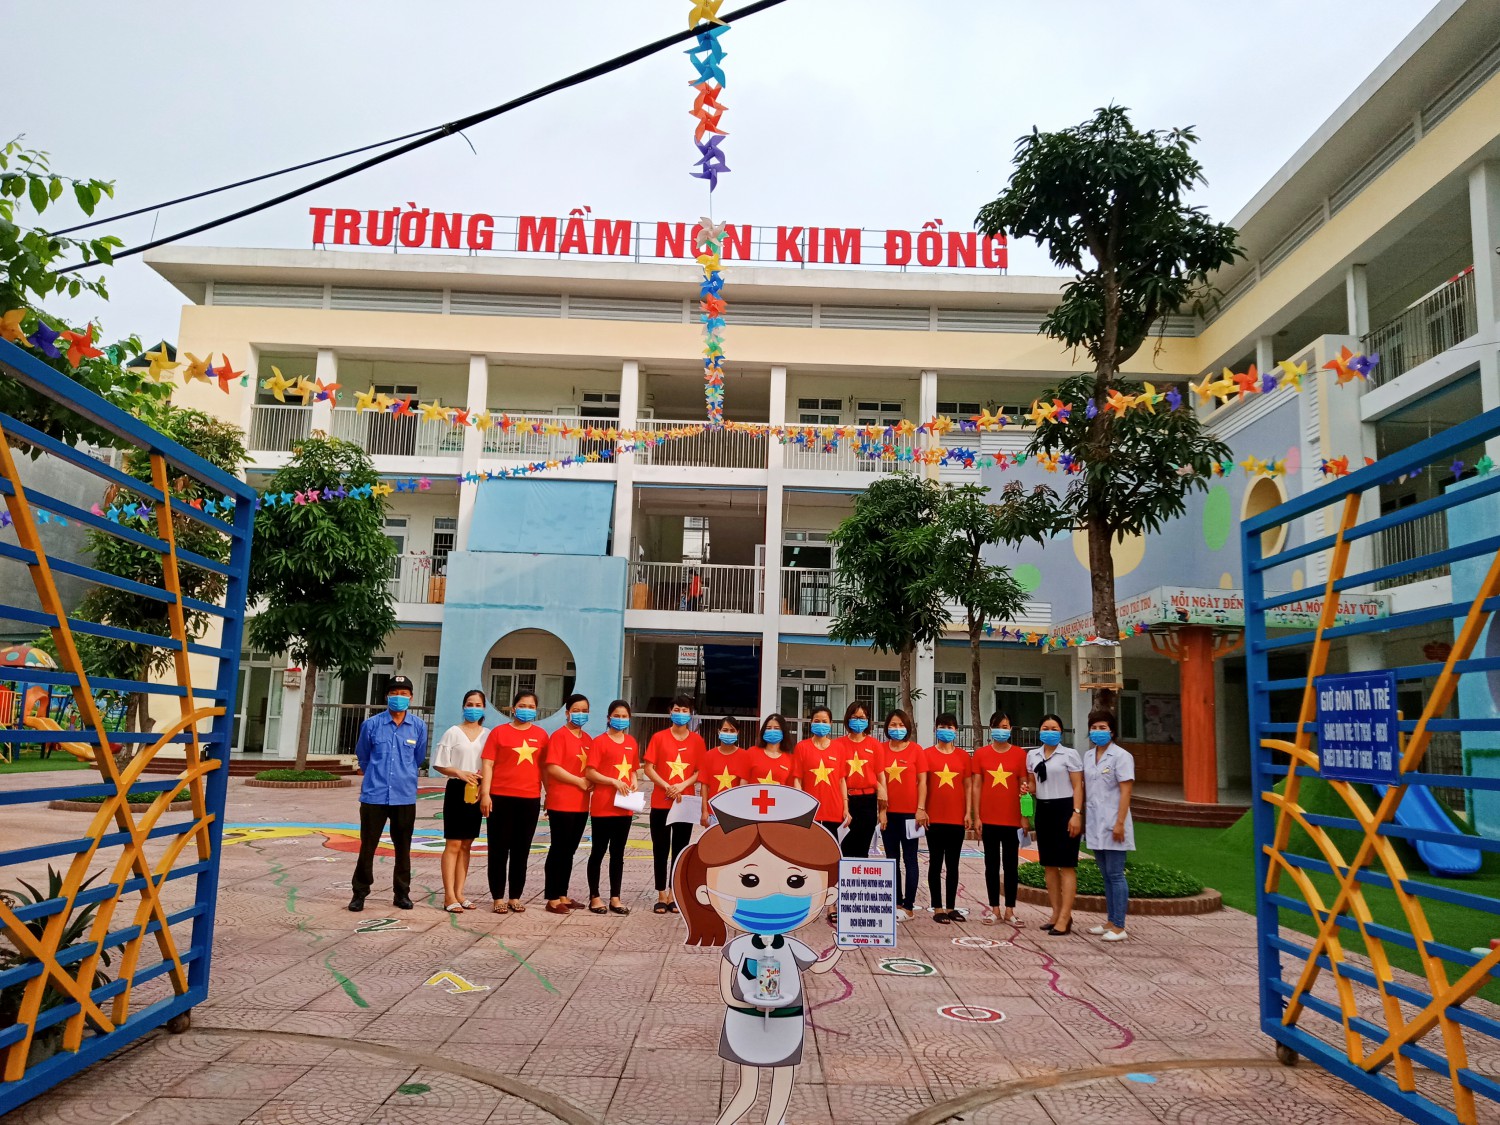 Ngày đầu "tựu trường" sau kỳ nghỉ dịch covid - 19 của Cô - Trò trường MN Kim Đồng